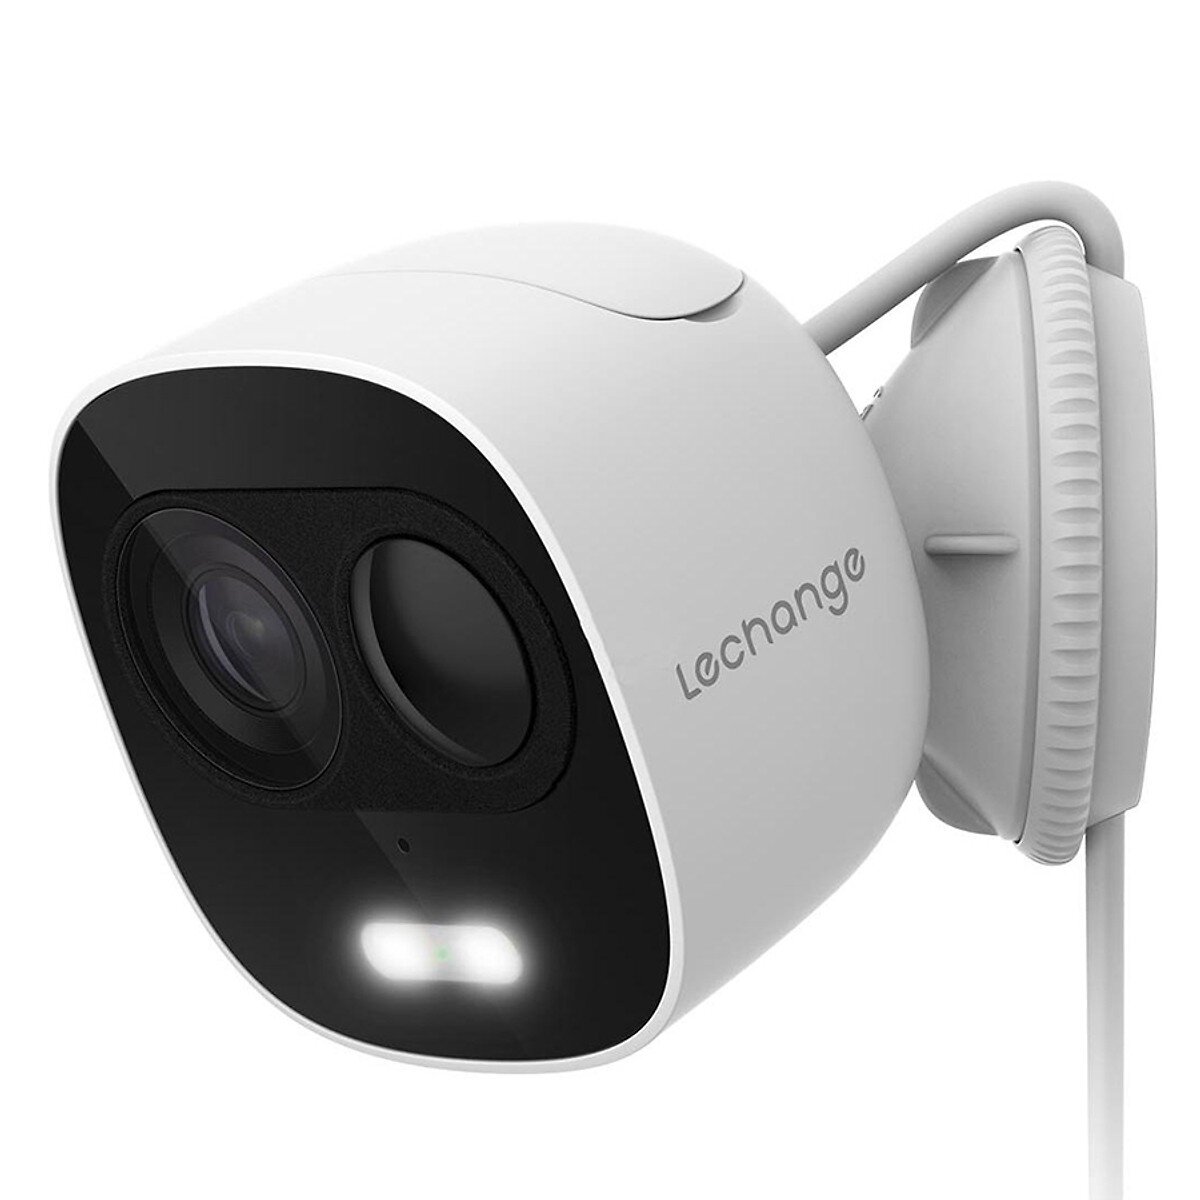 Camera imou LOOC IPC-C26EP 2.0 Megapixel, hỗ trợ đàm thoại 2 chiều, hồng ngoại thông minh, báo động - Hàng chính hãng